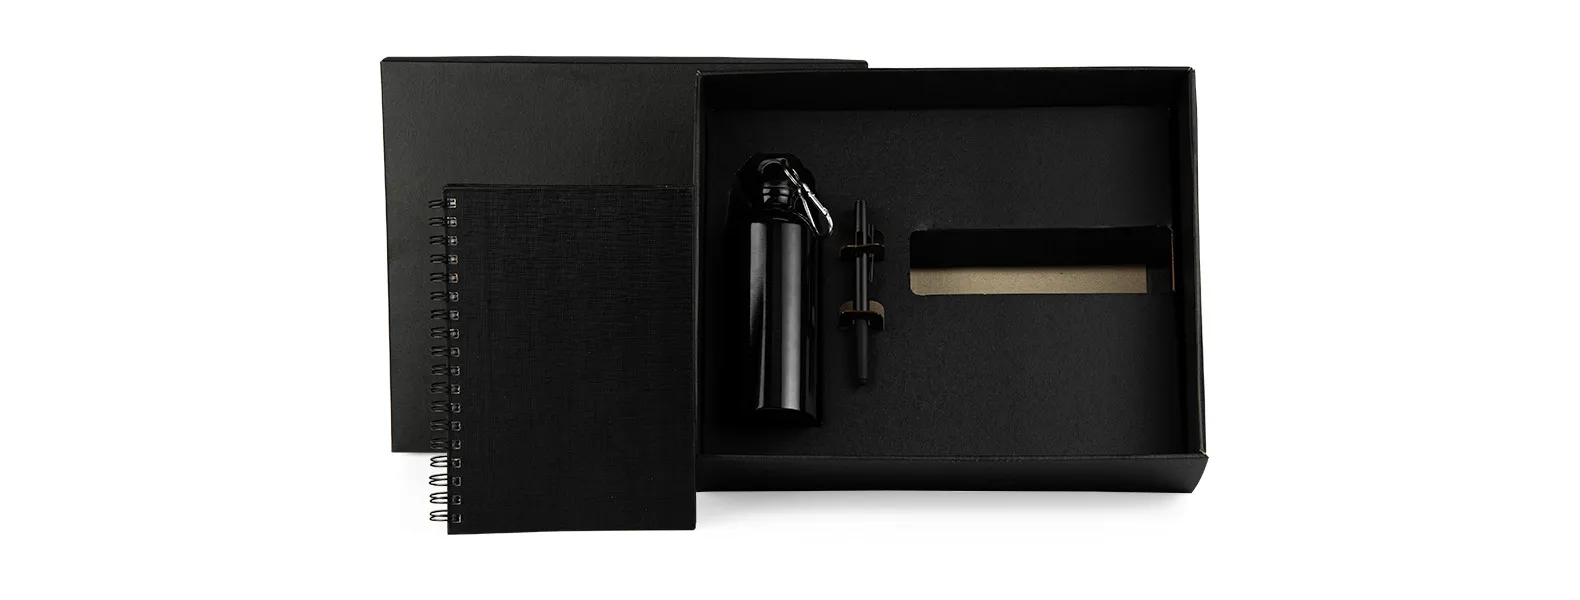 Kit composto por squeeze preto em alumínio revestido com verniz; caderno para anotações wire-o preto com capa dura revestida em percalux linho e caneta esferográfica em ABS preta.